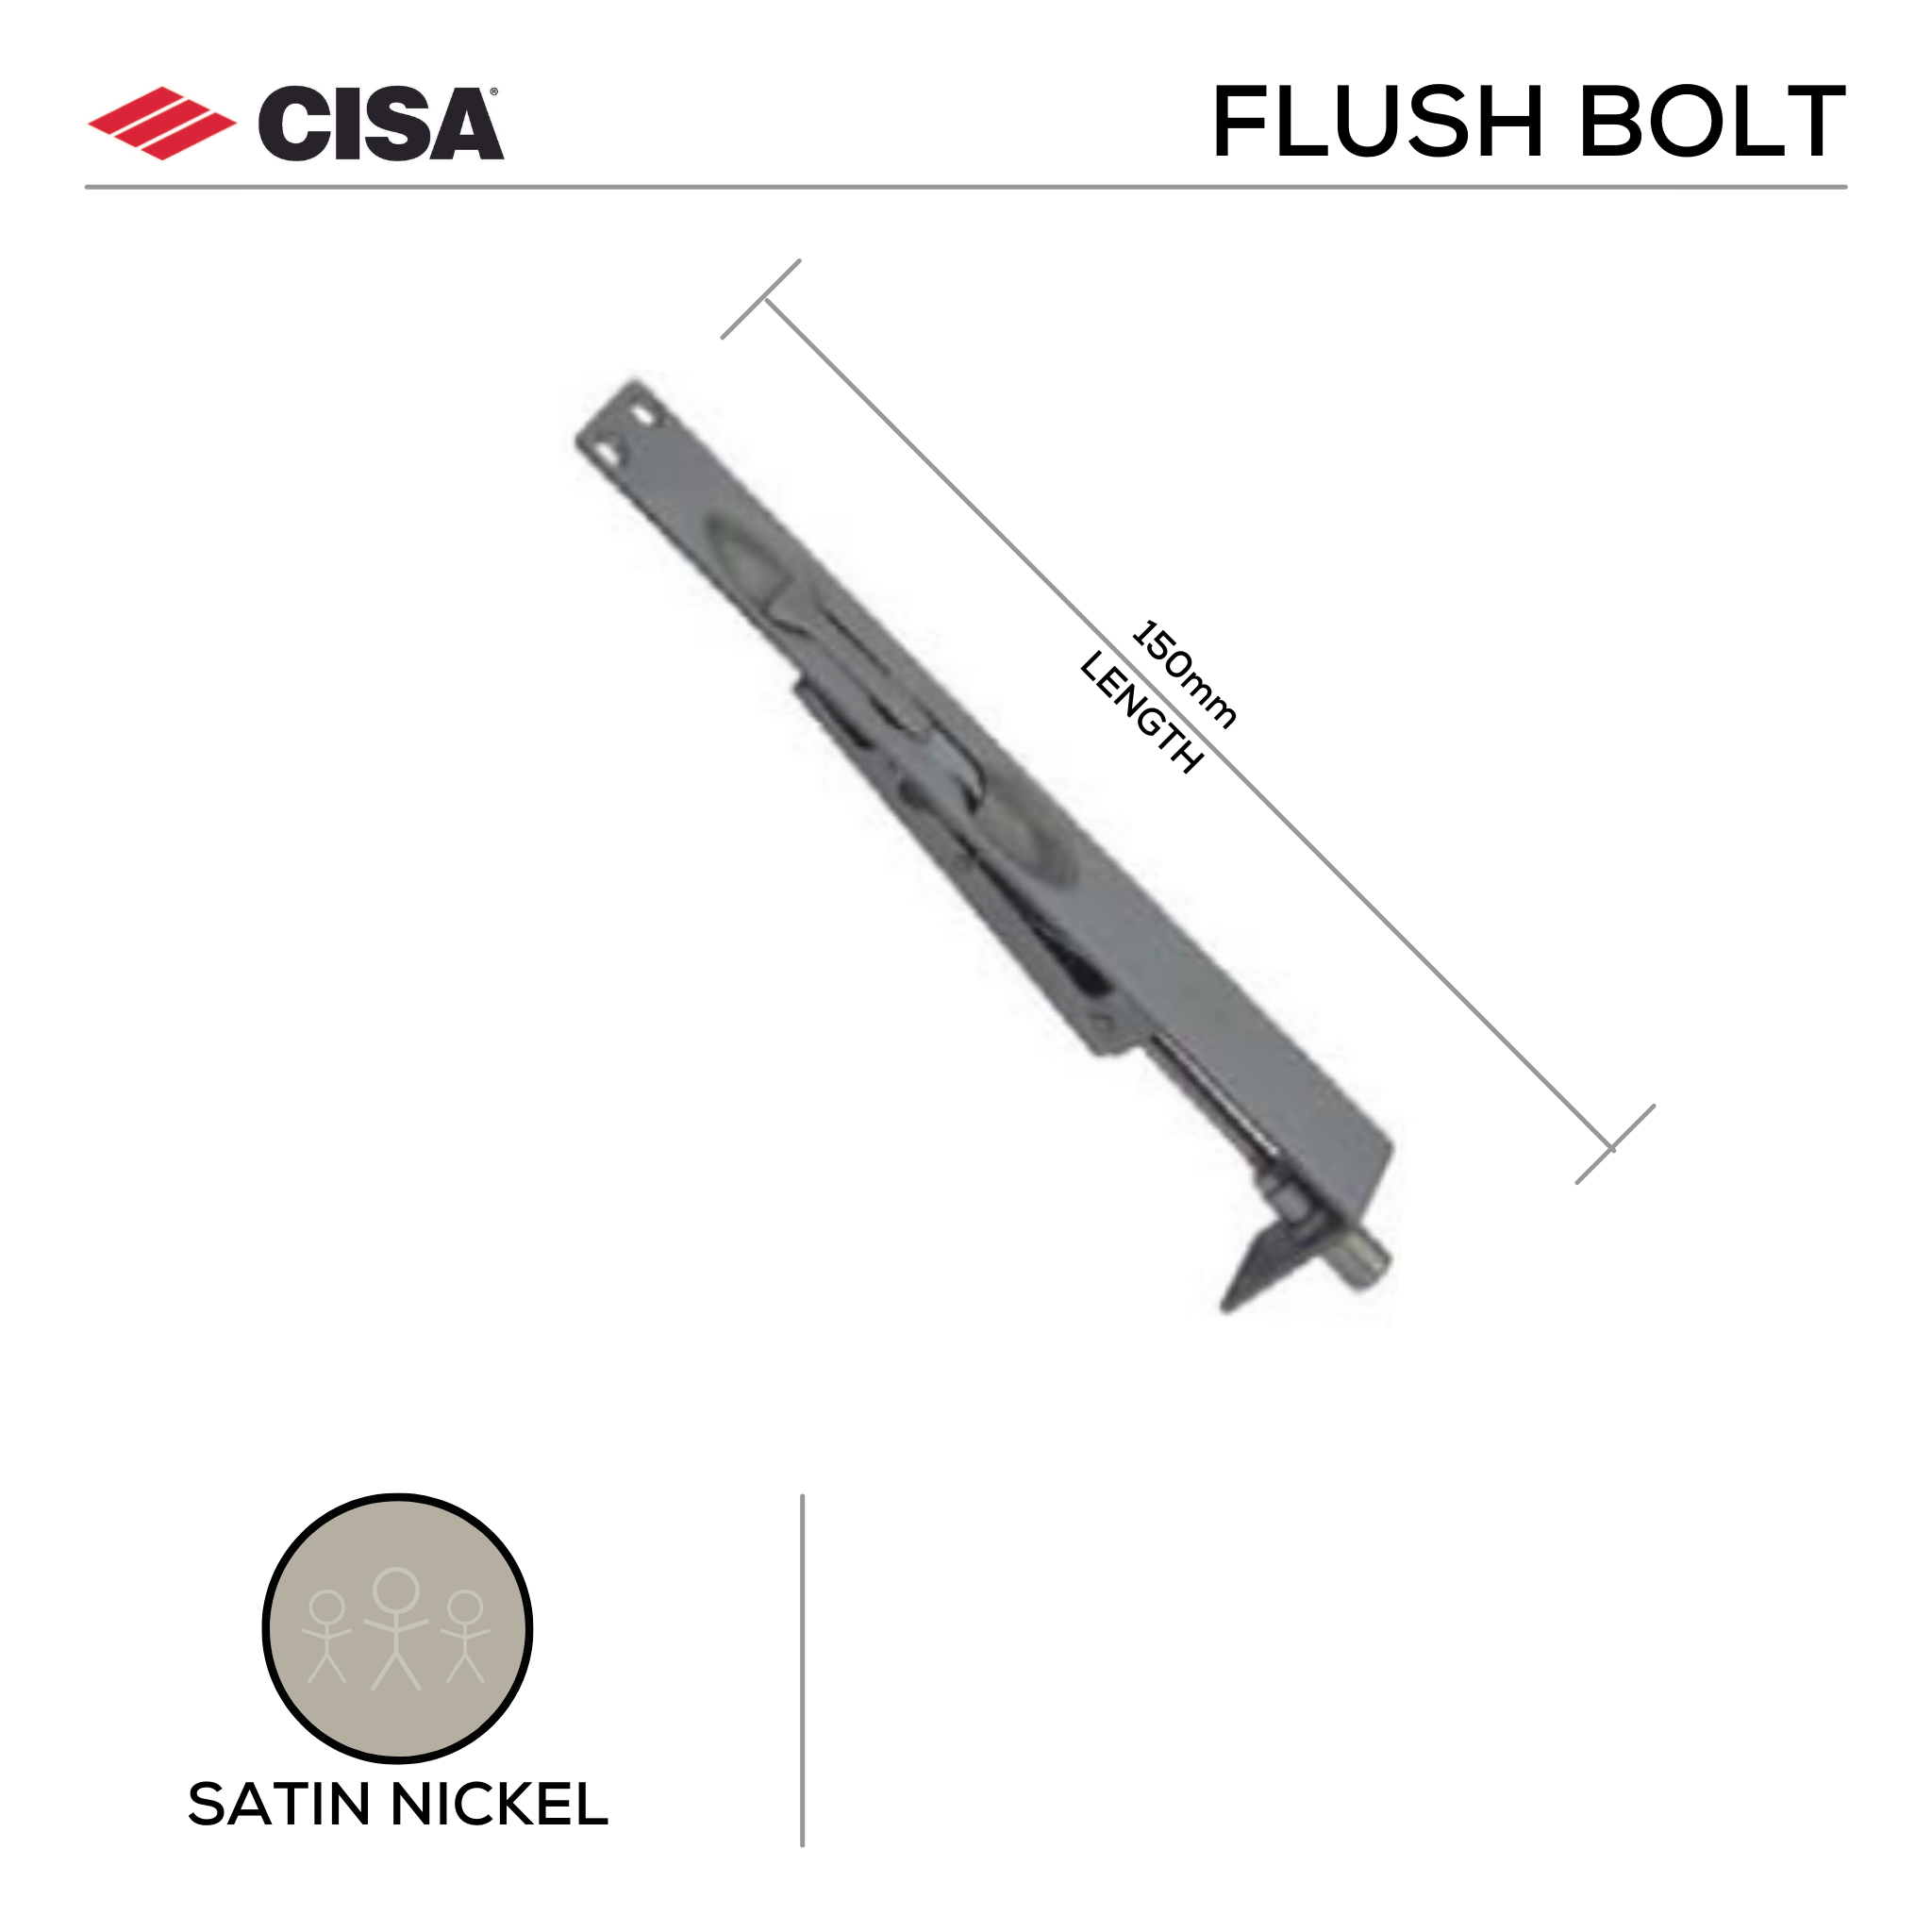 FBM150.SS, Flush Bolt, Mortice Type, 150mm (l) x 25mm (w), Satin Nickel, CISA